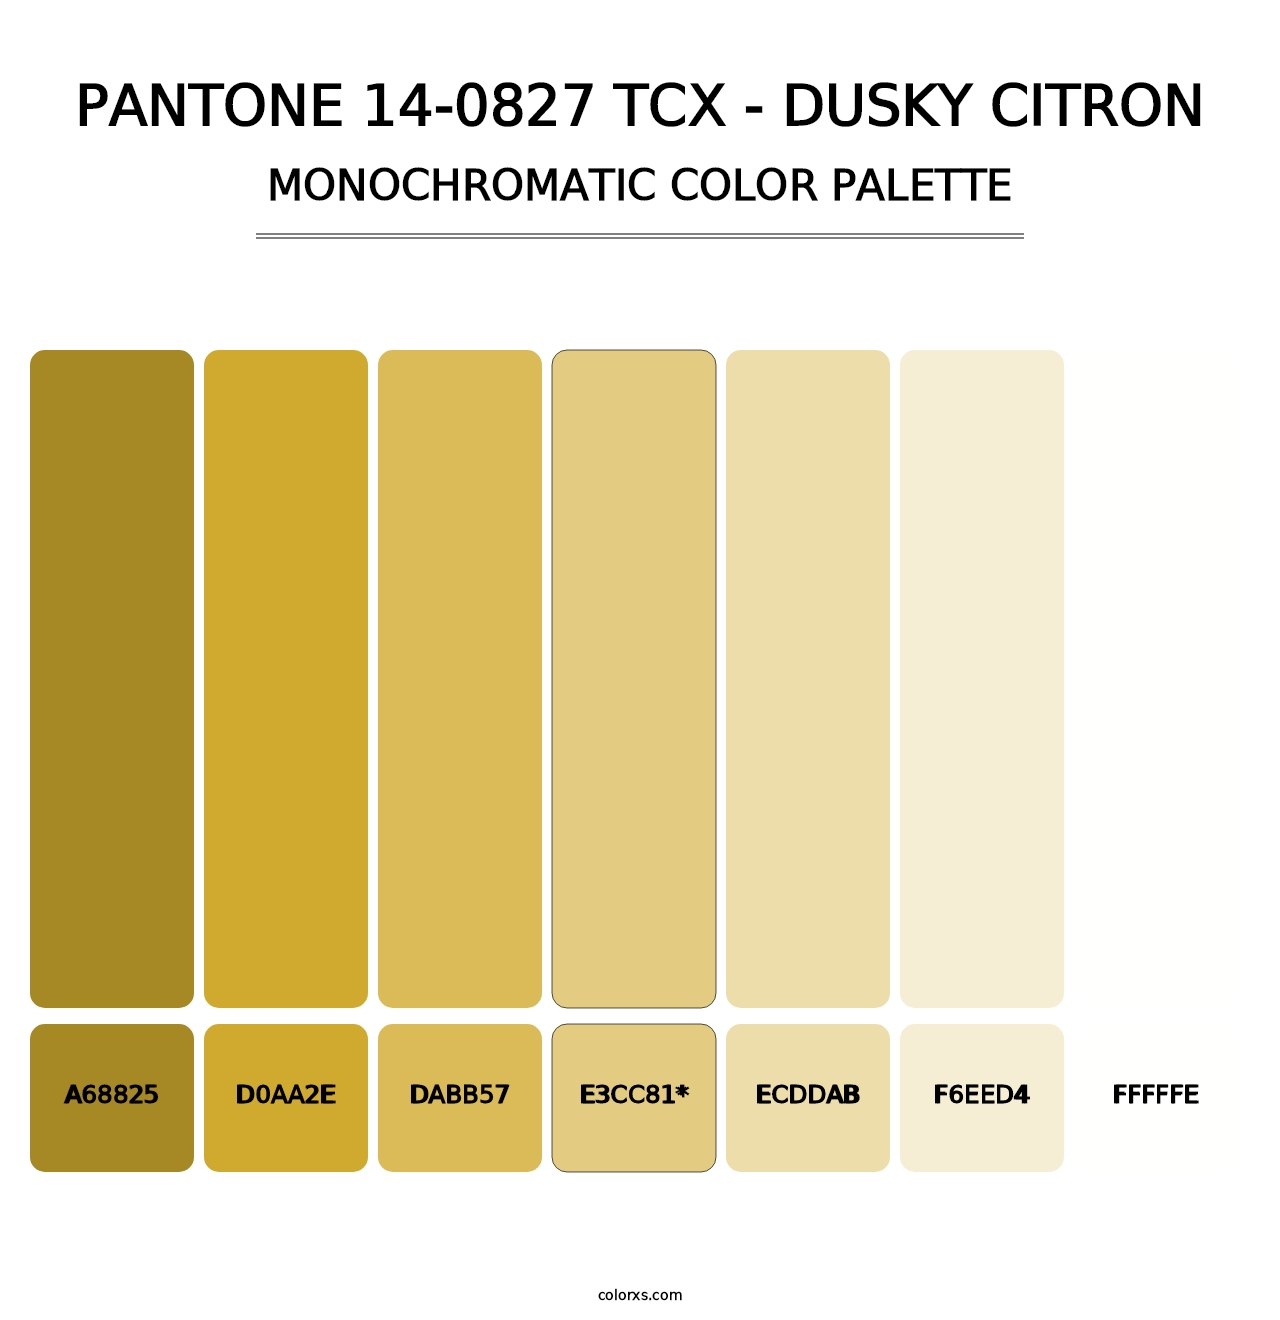 PANTONE 14-0827 TCX - Dusky Citron - Monochromatic Color Palette